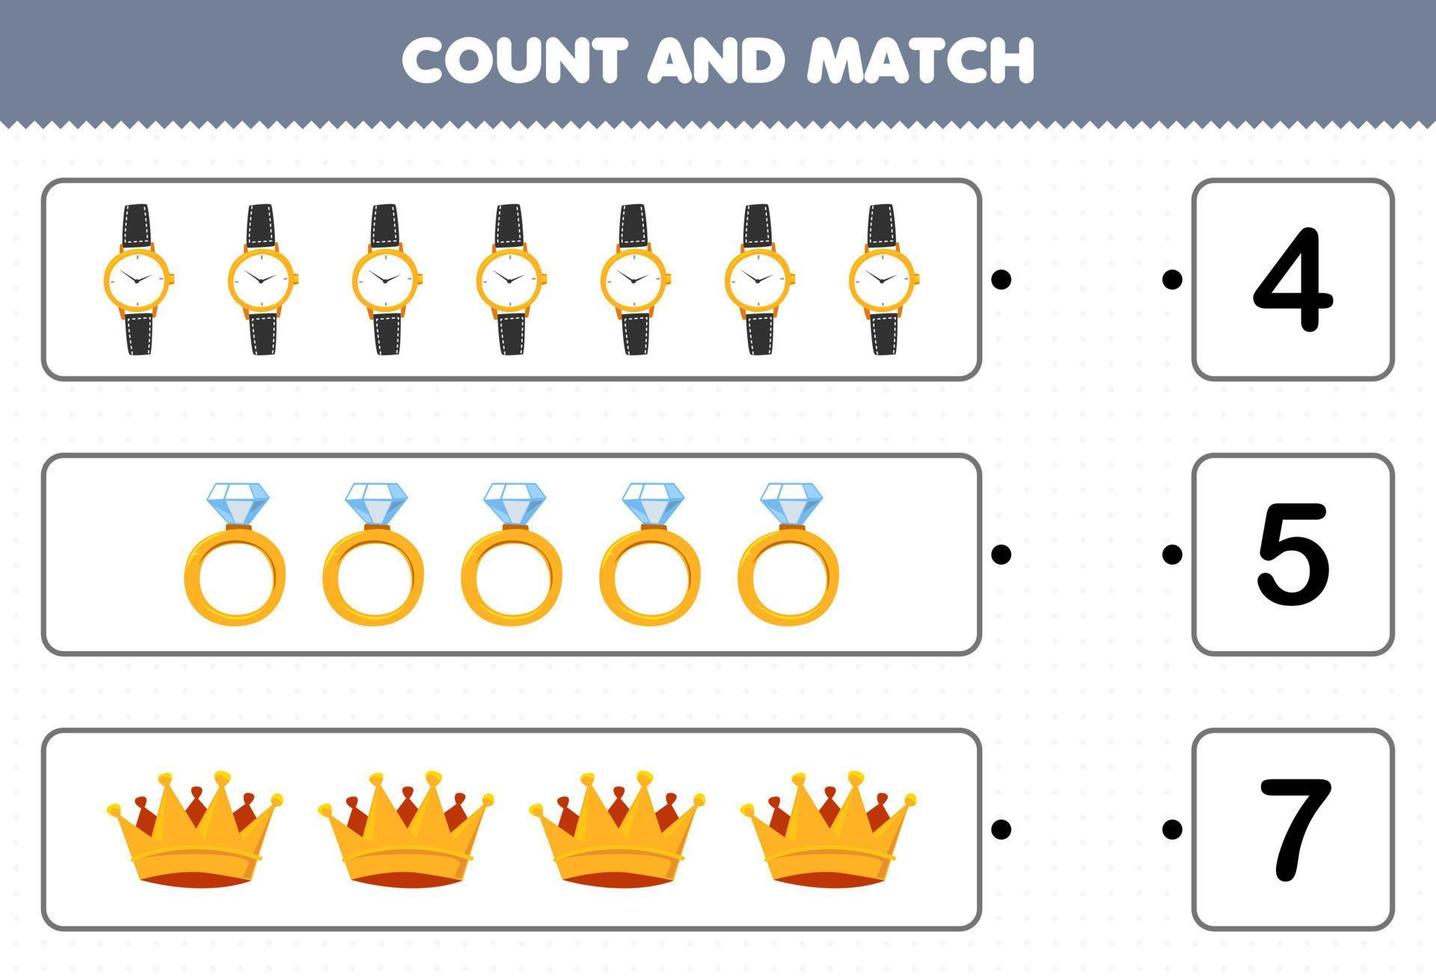 jogo educacional para crianças contar e combinar contar o número de coroa de anel de relógio de joias vestíveis de desenho animado e combinar com os números certos planilha imprimível vetor